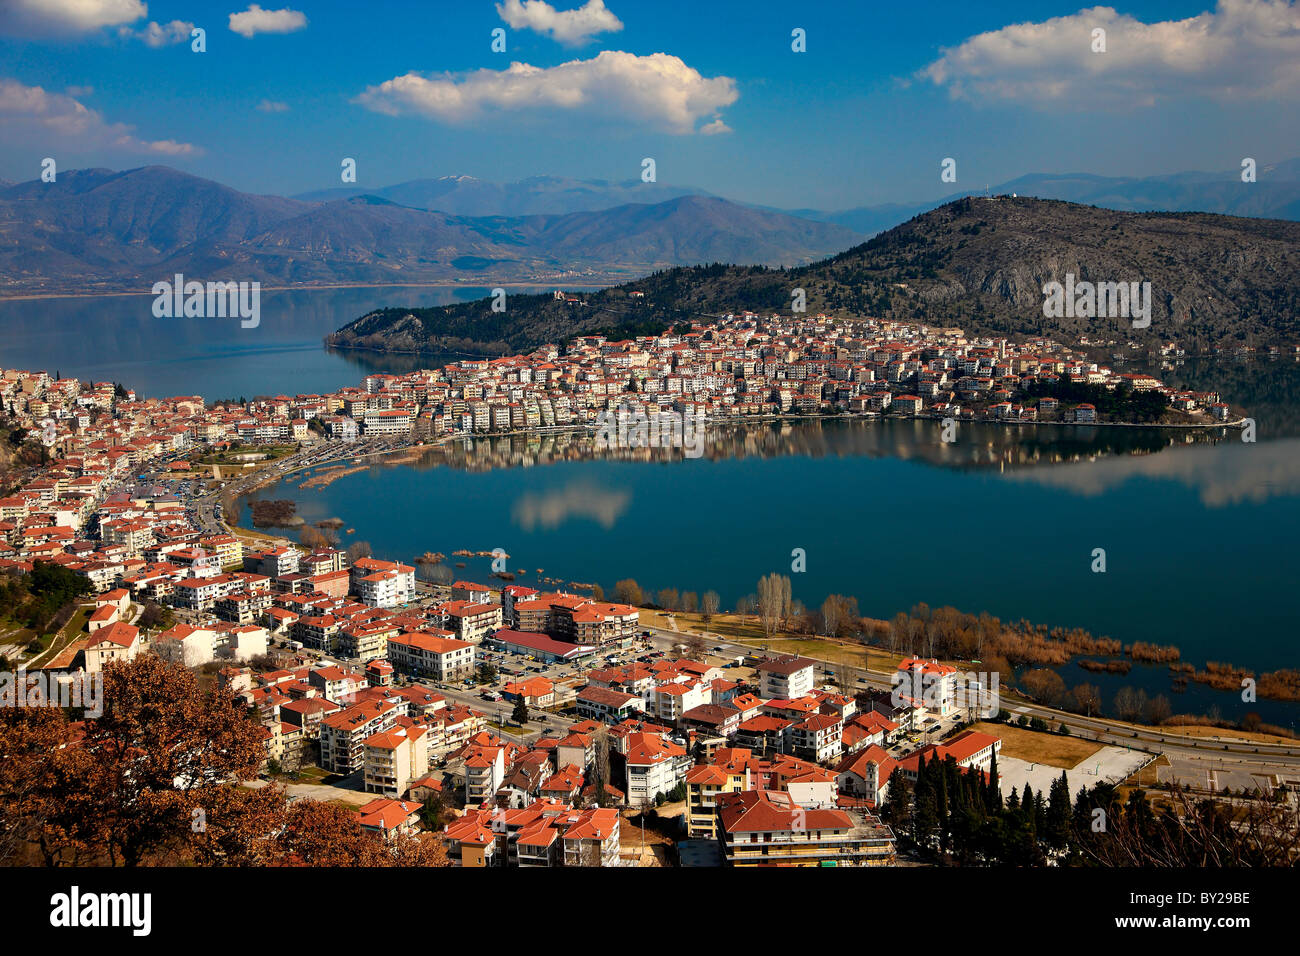 Panoramische Ansicht der Stadt Kastoria, umgeben von schönen 'Orestias' oder "Orestiada" See. Makedonien, Griechenland. Stockfoto